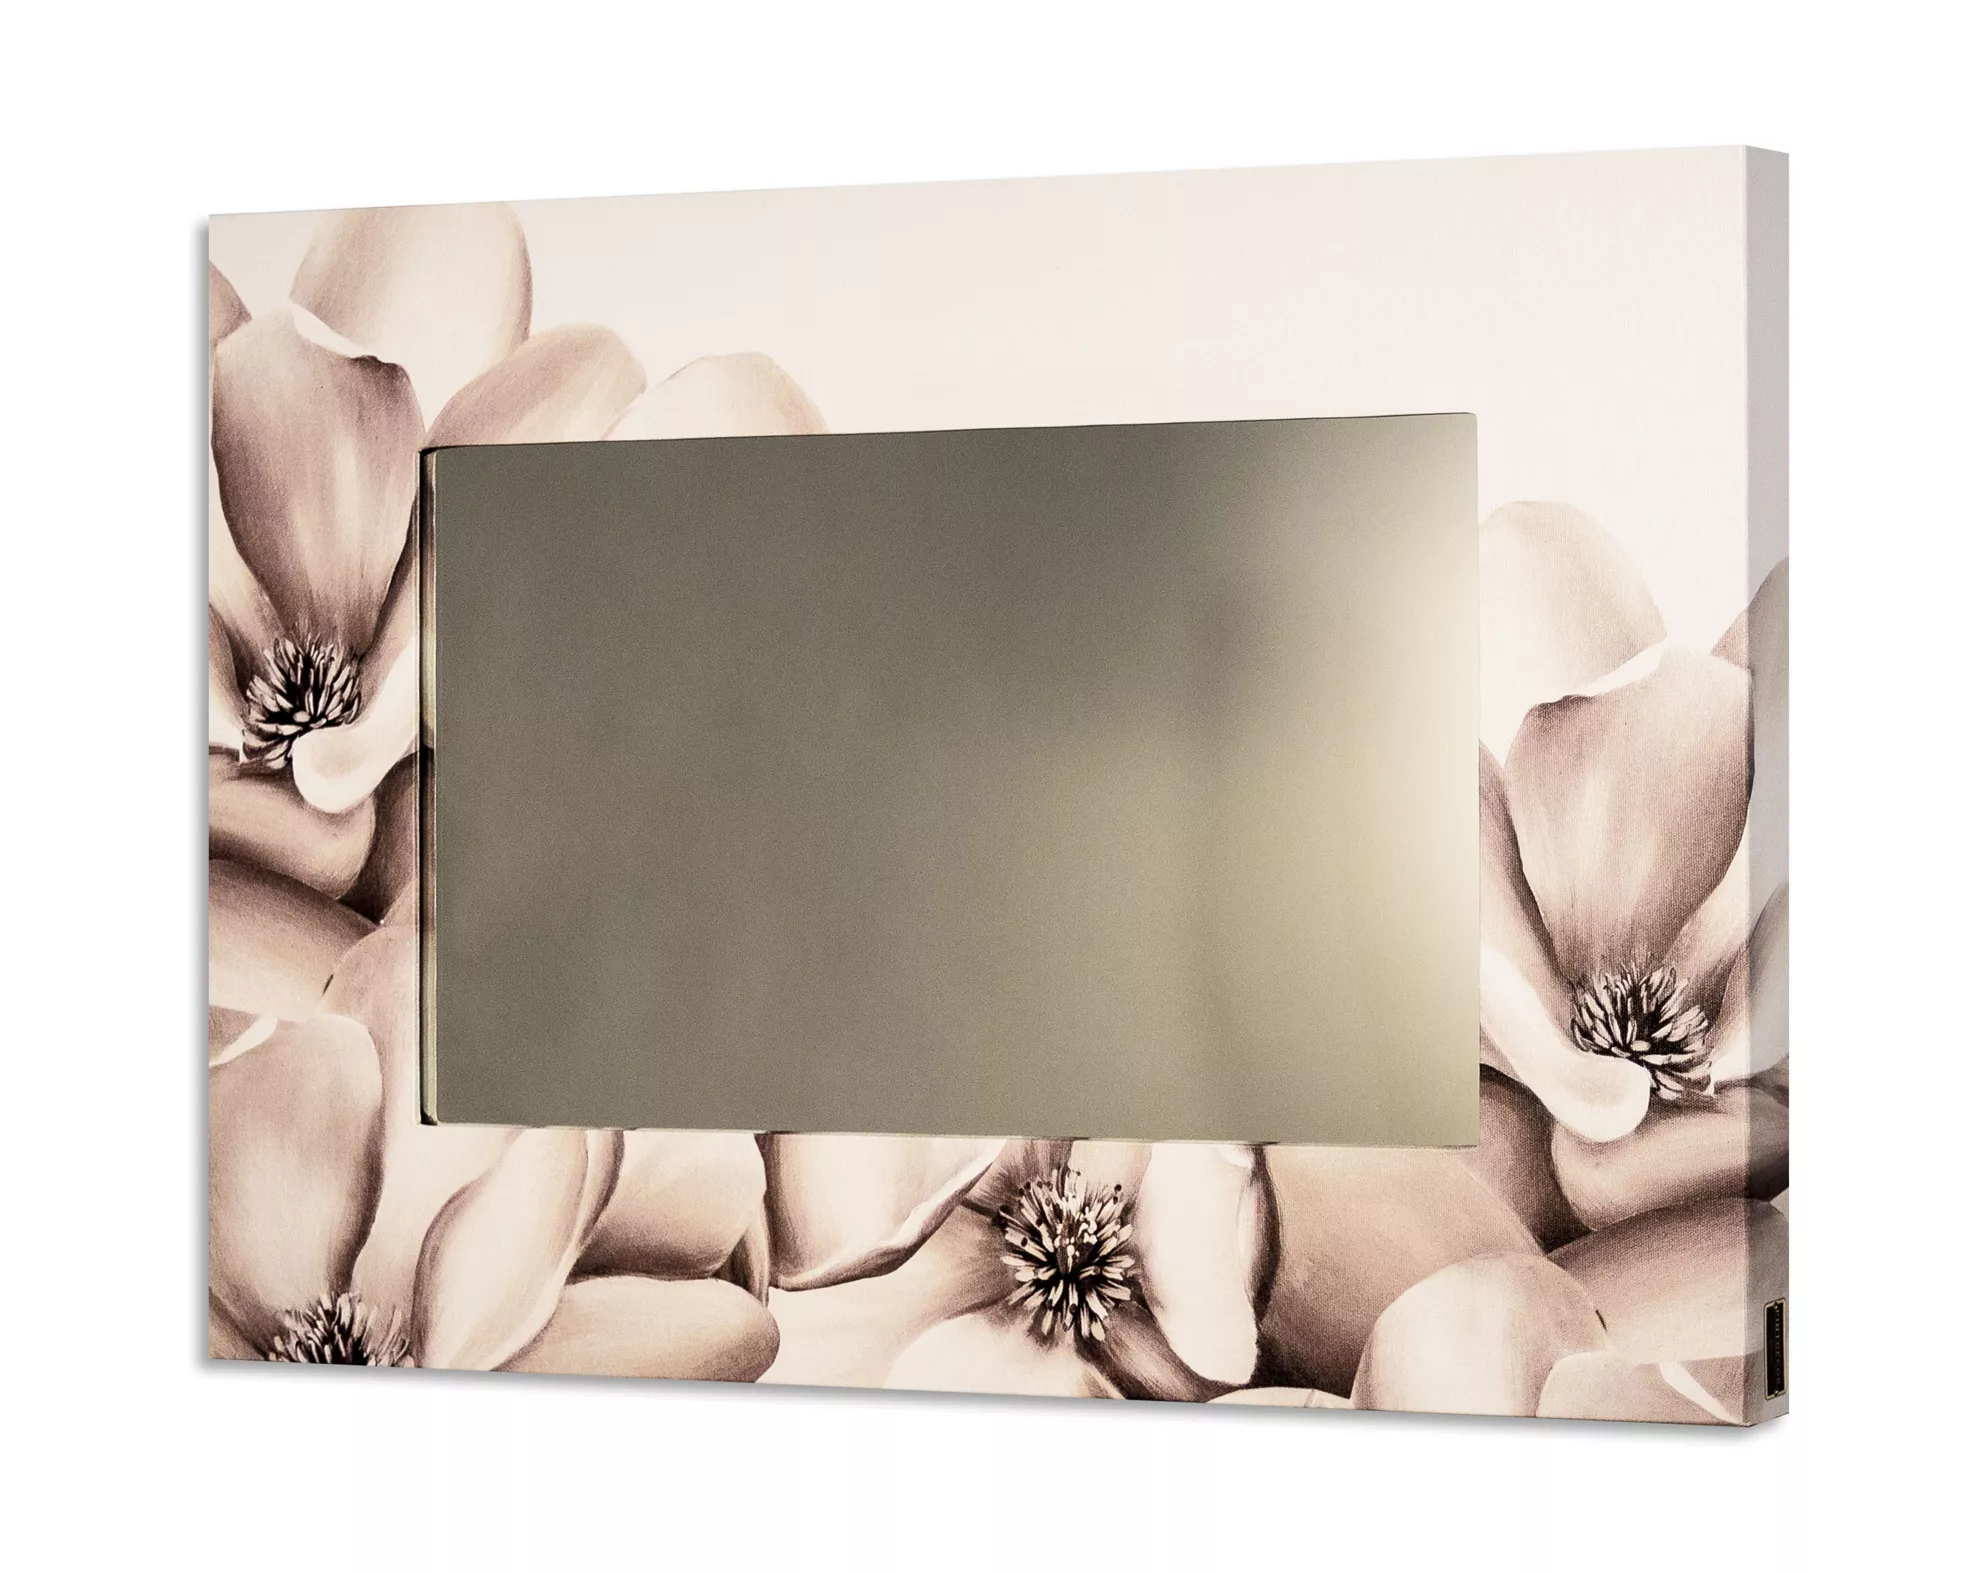 Specchio da parete rettangolare per camera da letto 80x60 floreale - 5806